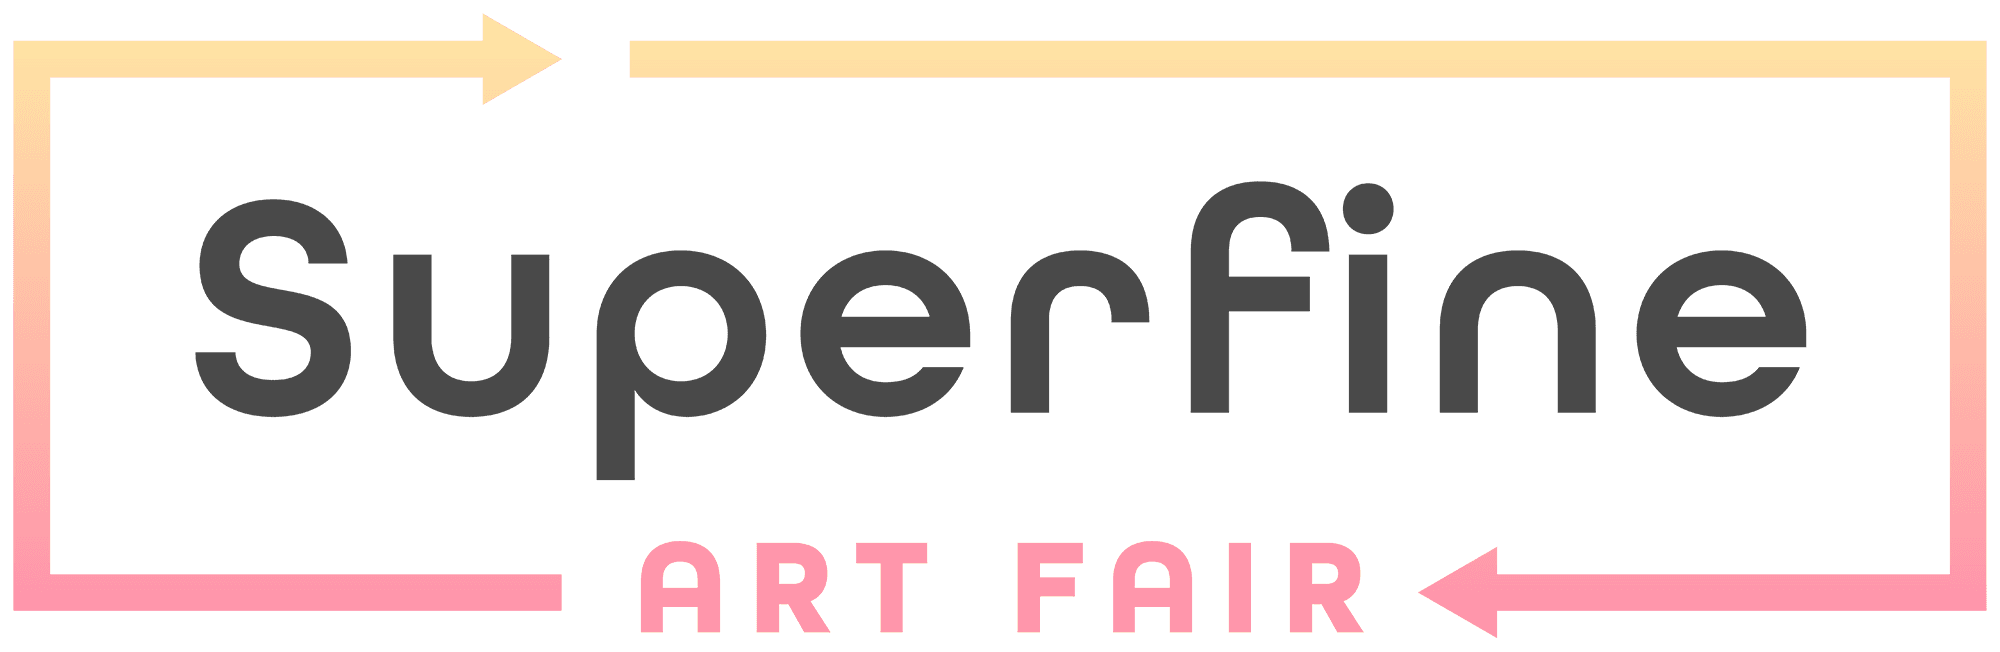 Superfine_Art_Fair 横幅